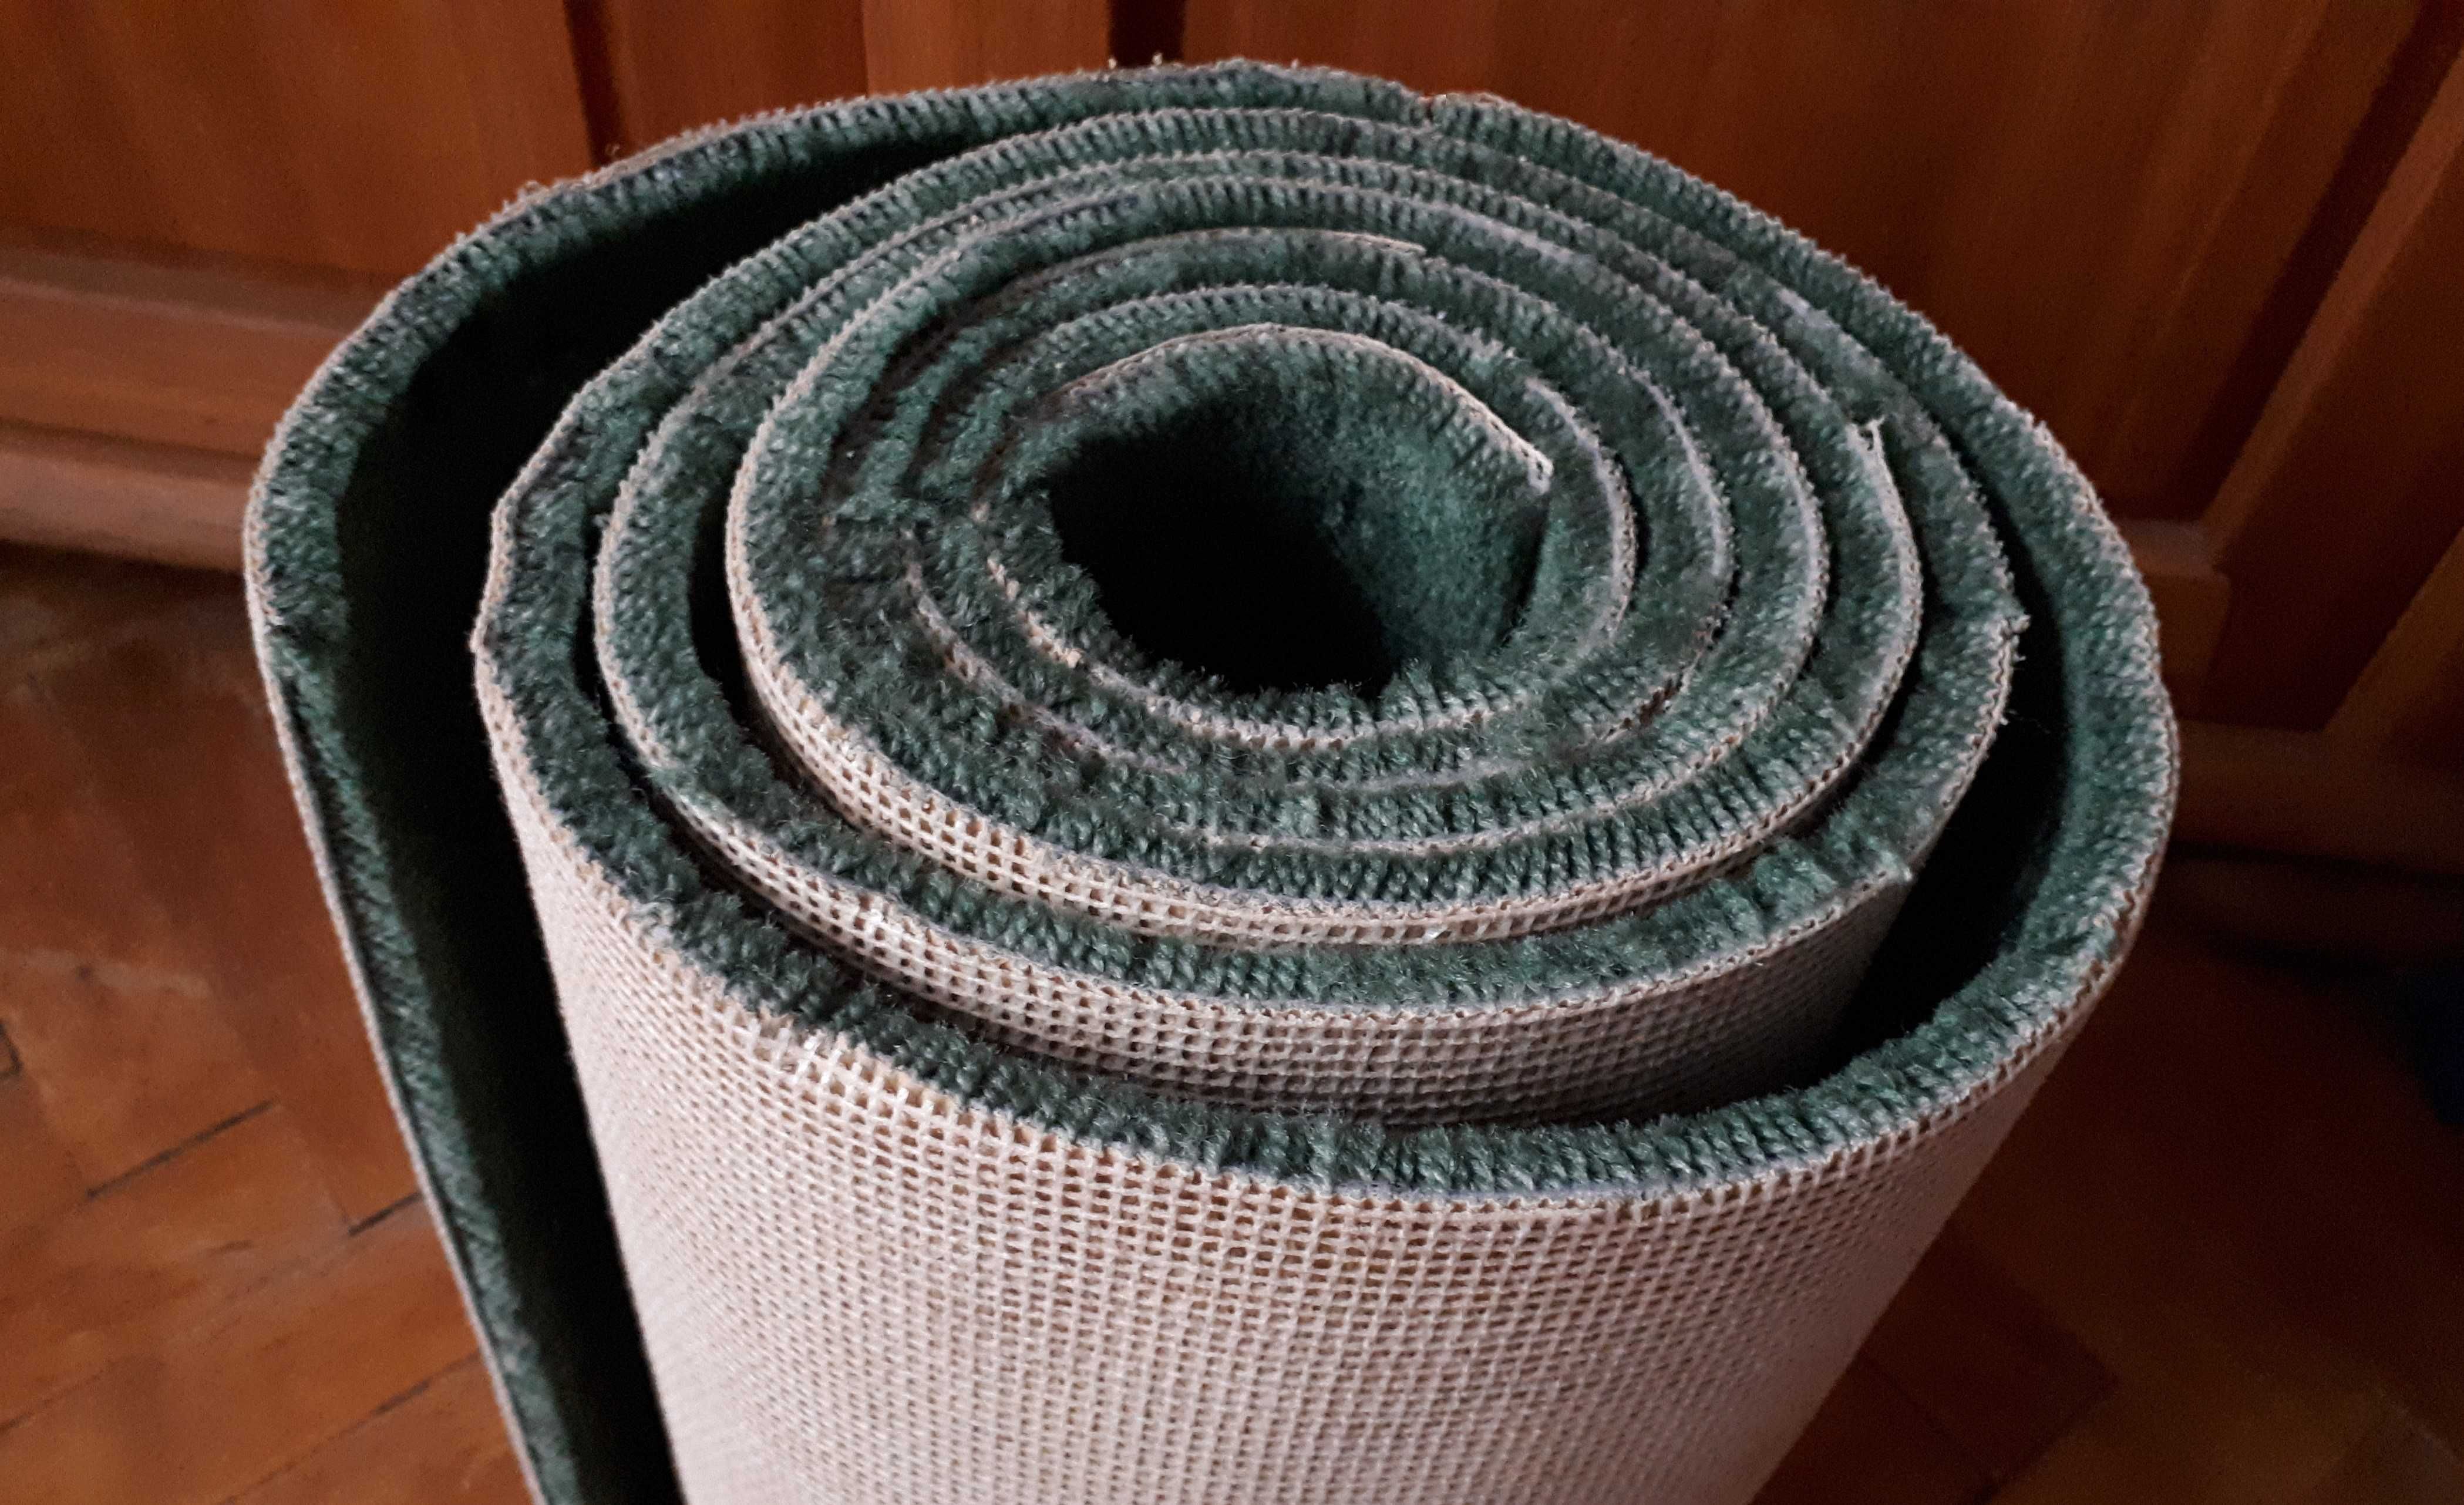 nowa wykładzina dywanowa 315/35 cm podłogowa zielona dywanik